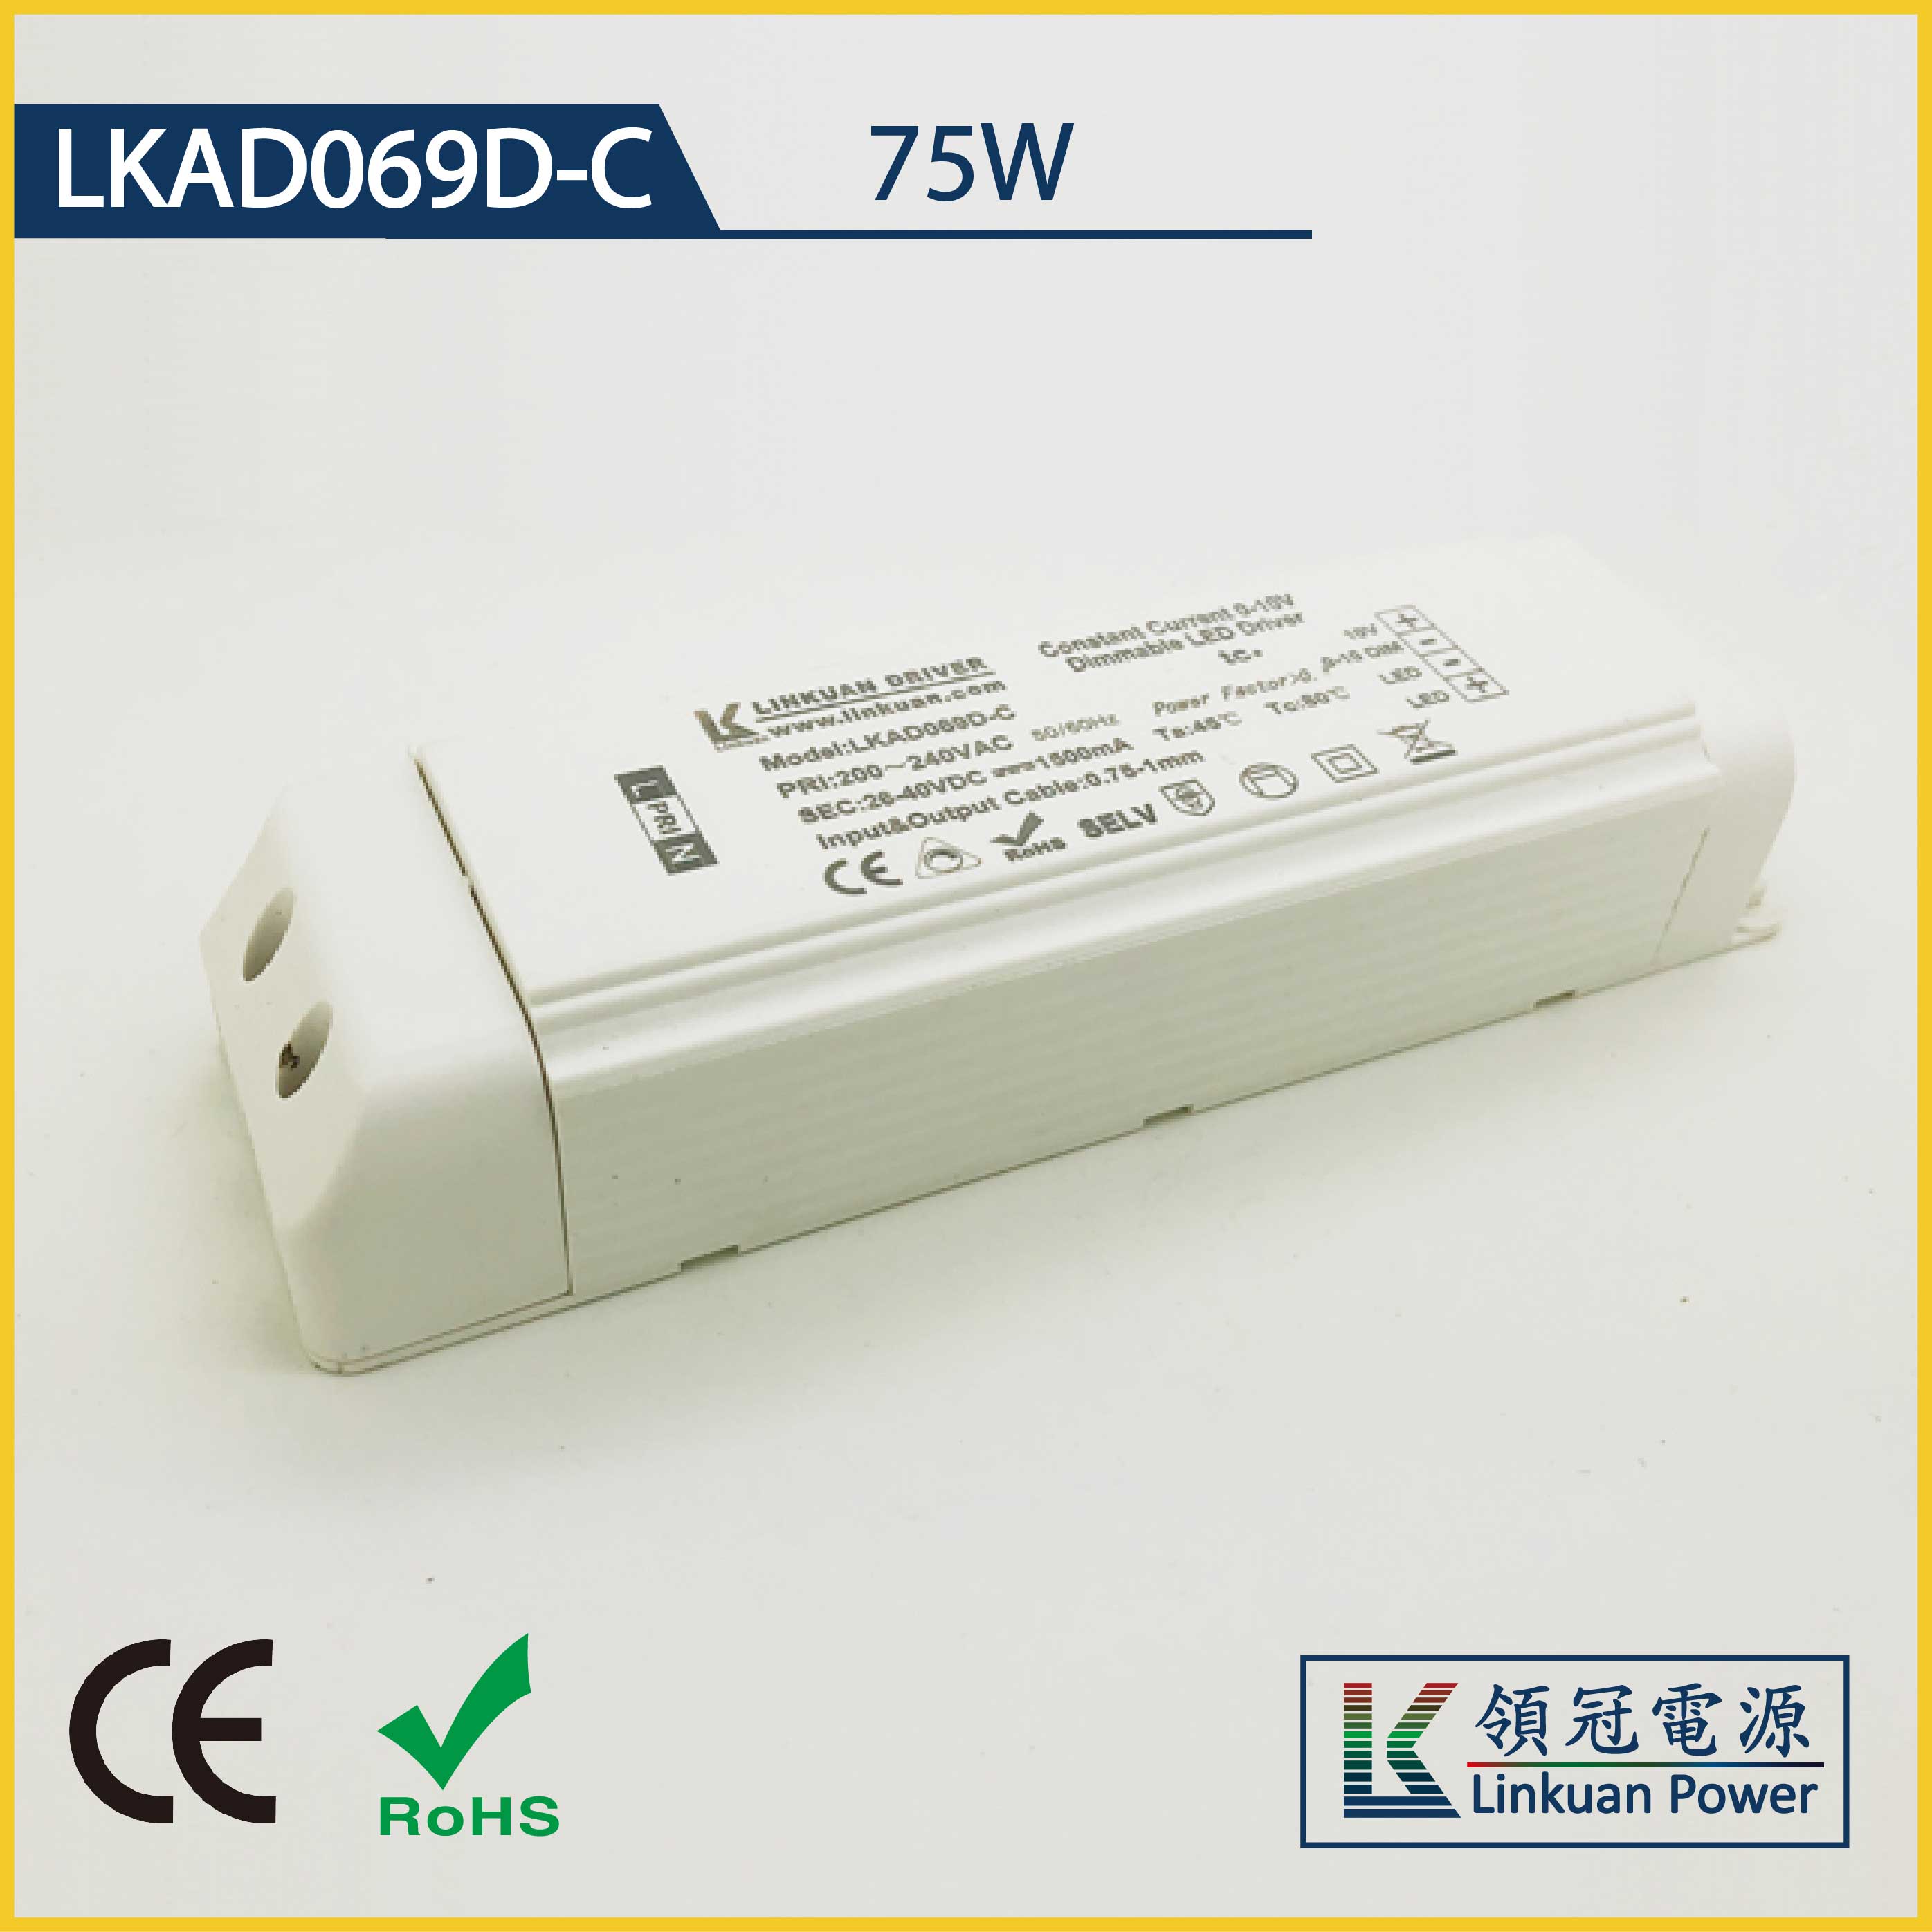 LKAD069D-C 75W 5-42V 1800mA 0-10V Dimming LED drivers